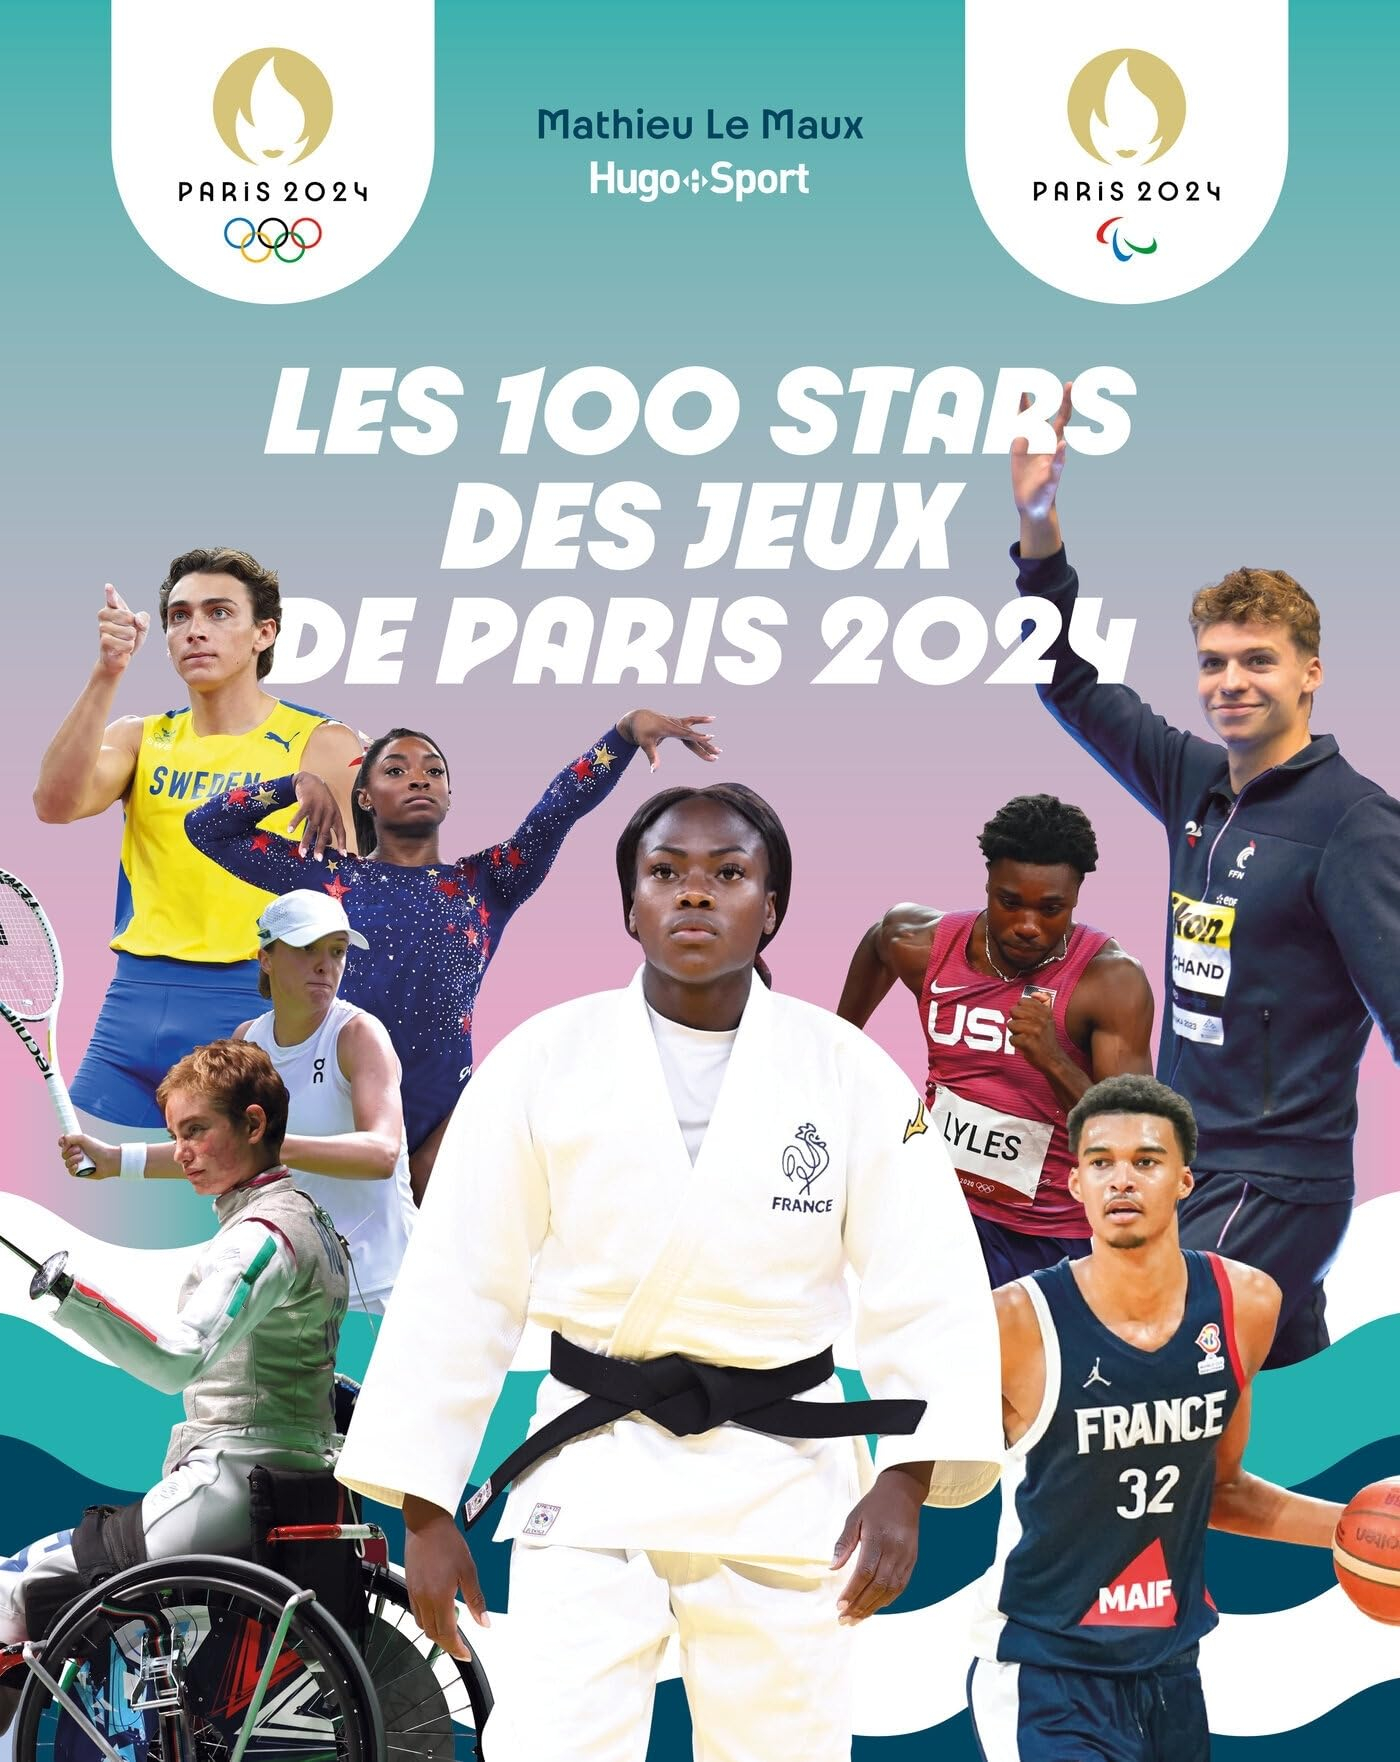 Les 100 stars des jeux de Paris 2024